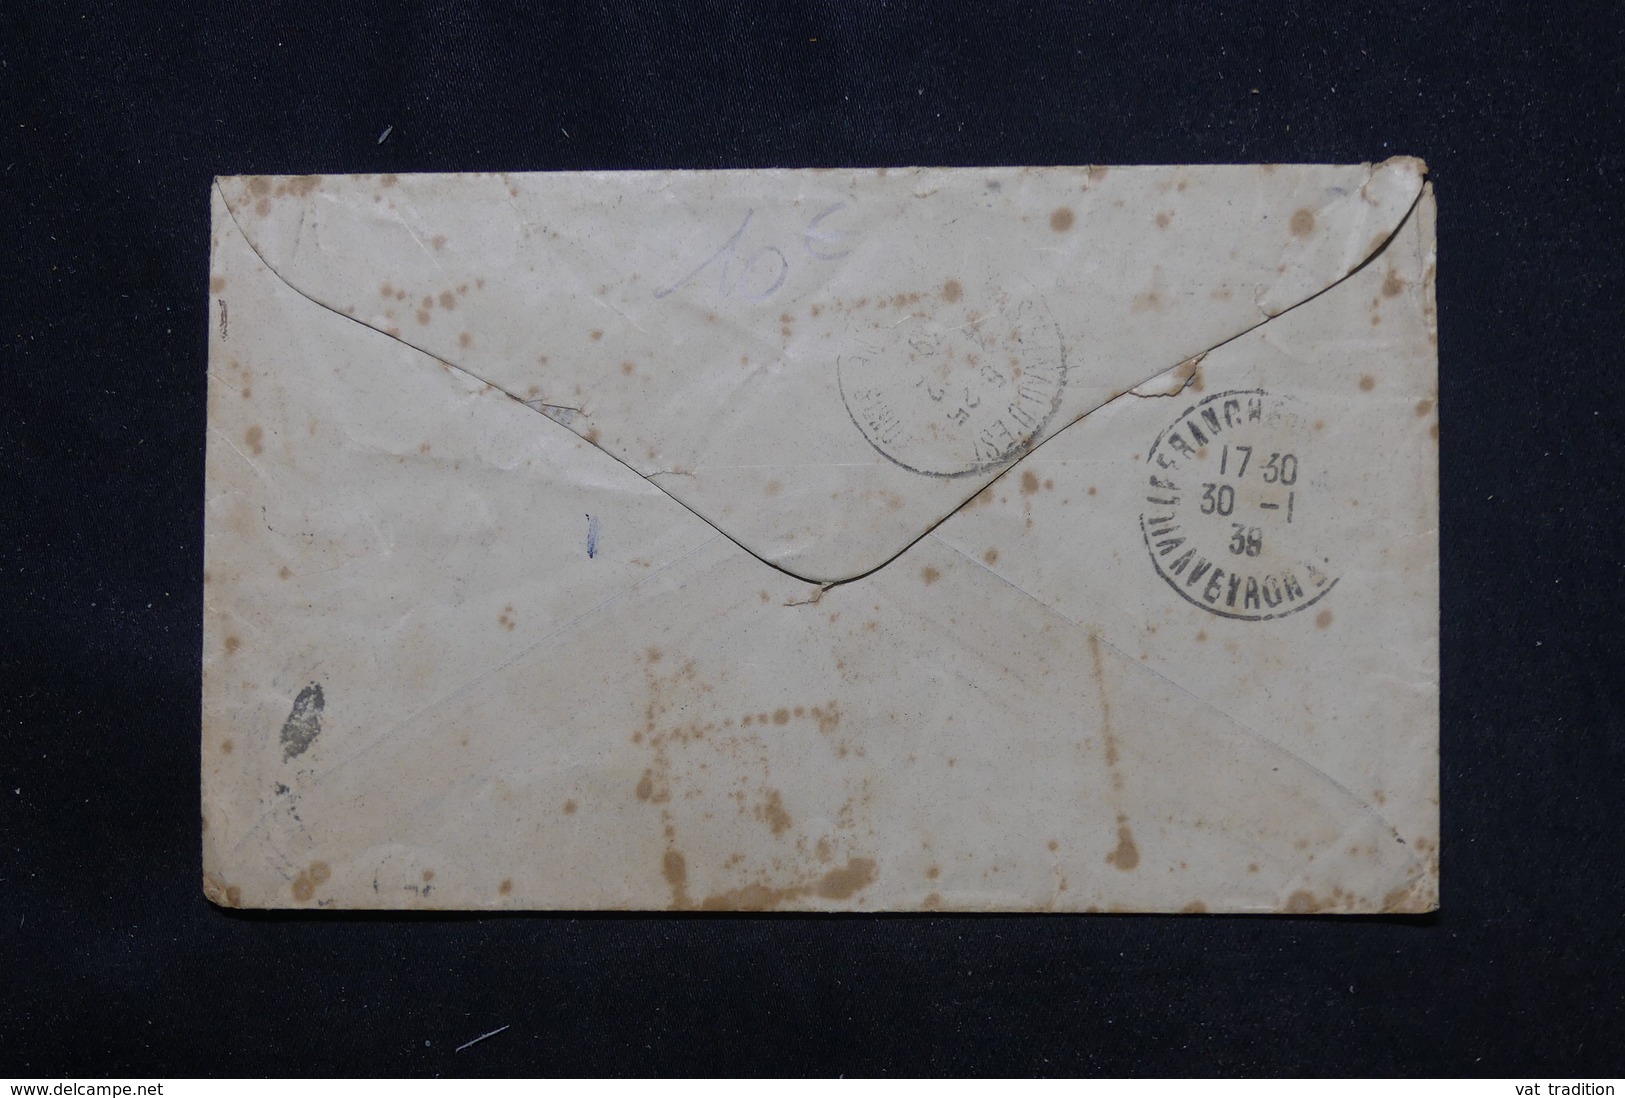 NOUVELLE ZÉLANDE - Enveloppe De Rhutt En 1938 Pour La France Avec Cachet De Taxe - L 59964 - Lettres & Documents